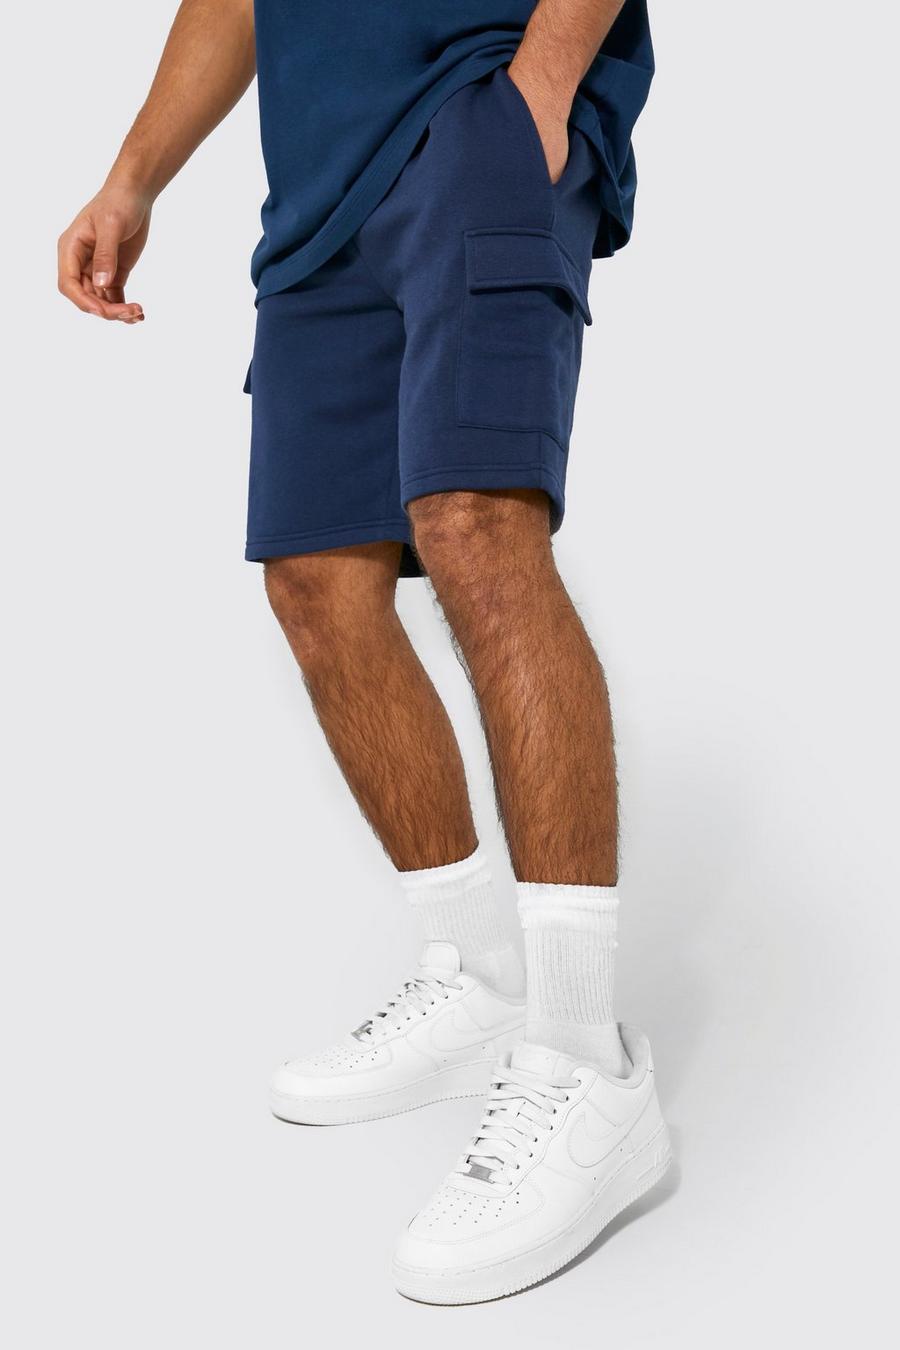 Pantalón corto Regular cargo de tela jersey con algodón ecológico, Navy azul marino